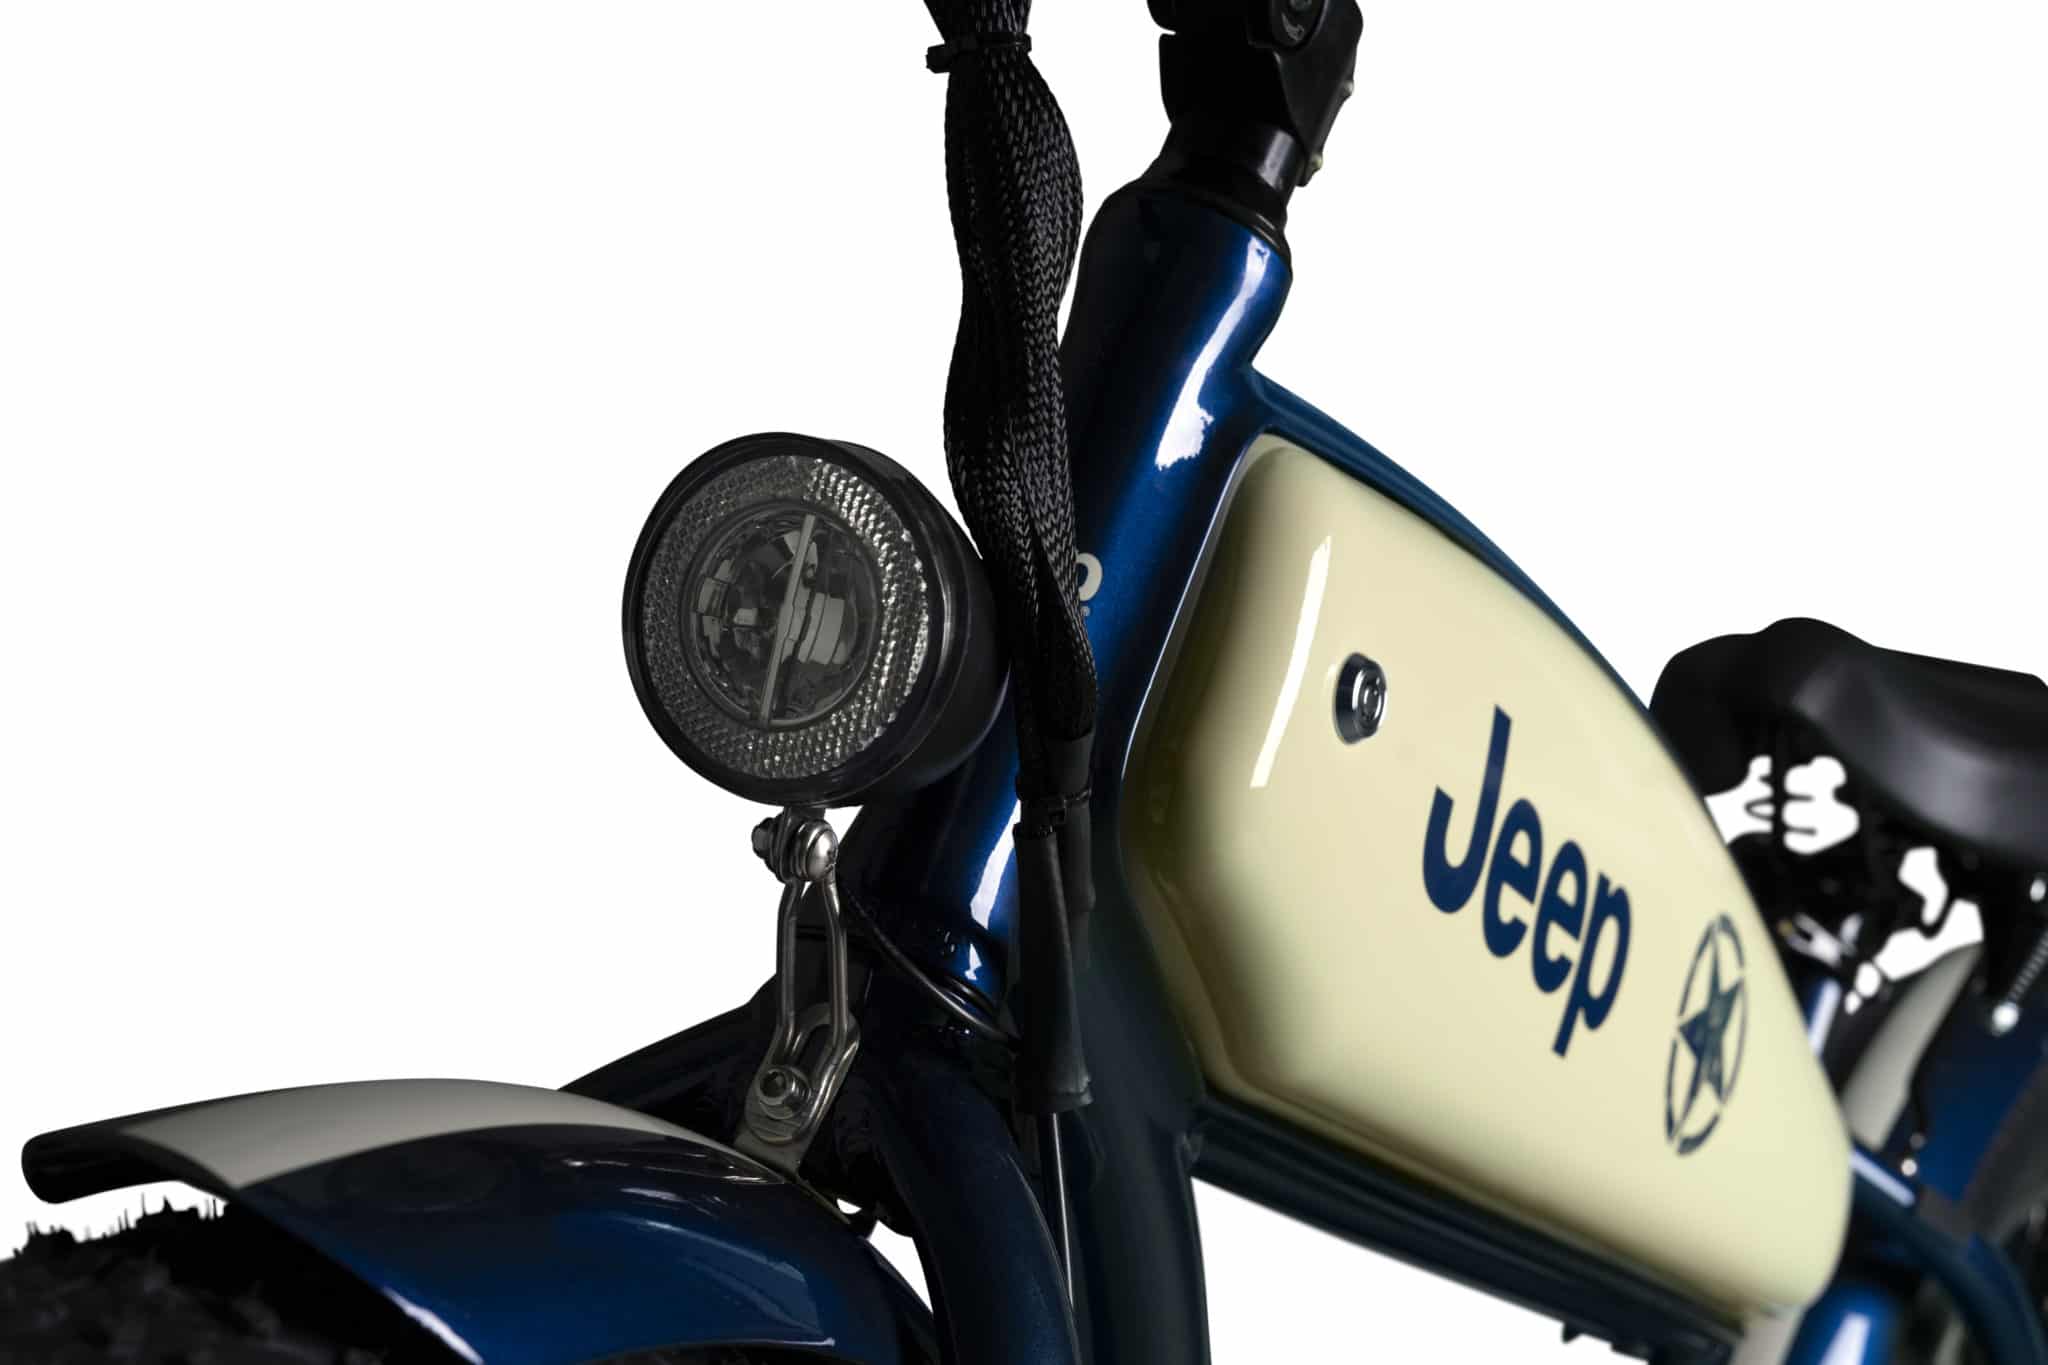 Beleuchtung am Jeep Cruiser E-Bike